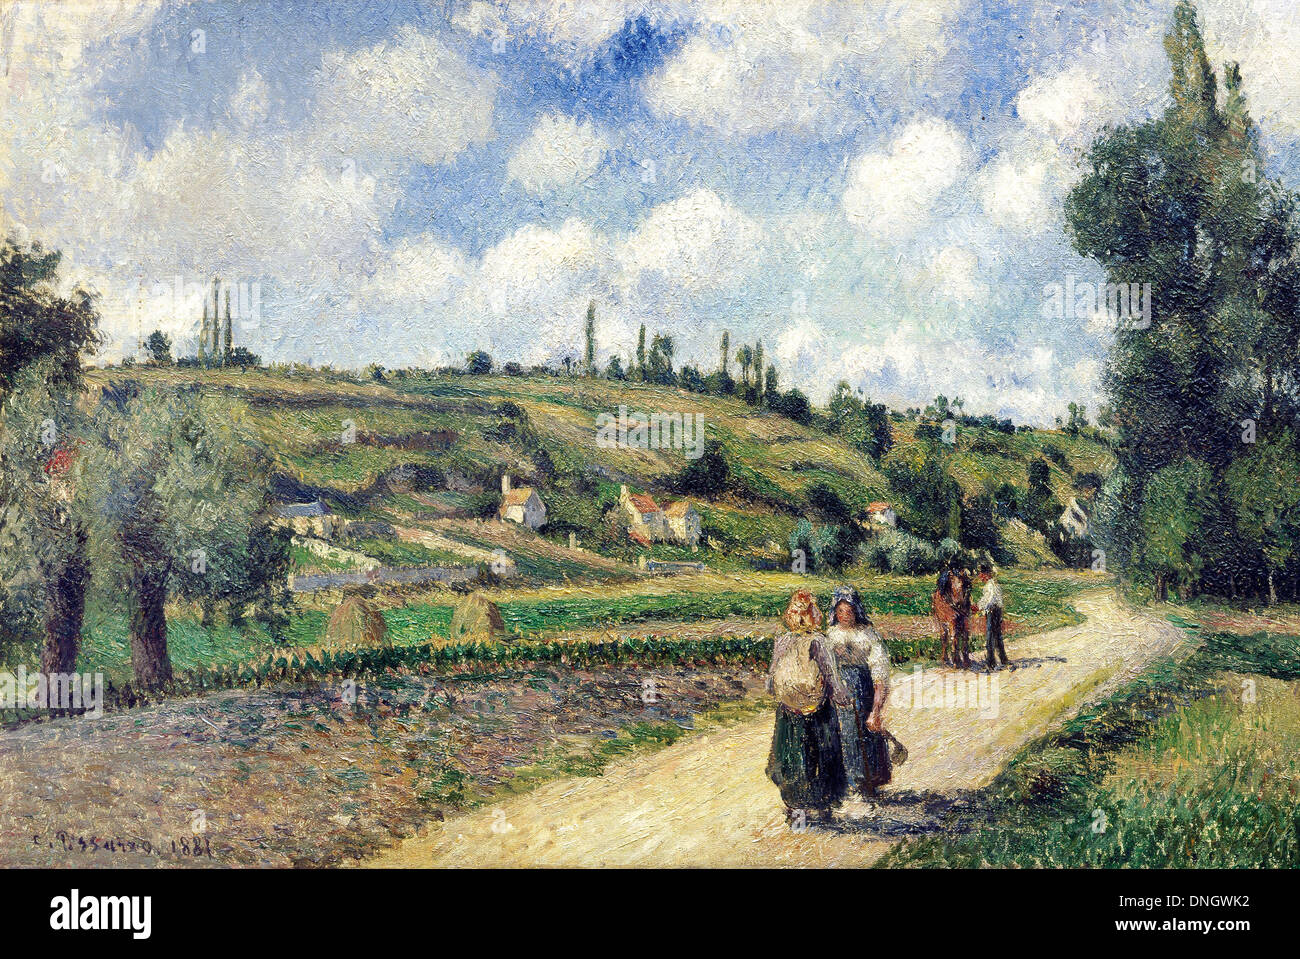 Camille Pissarro, Paysage près de Pontoise, la route d'Auvers 1881 Huile sur toile. Musée d'Israël, Jérusalem. Banque D'Images